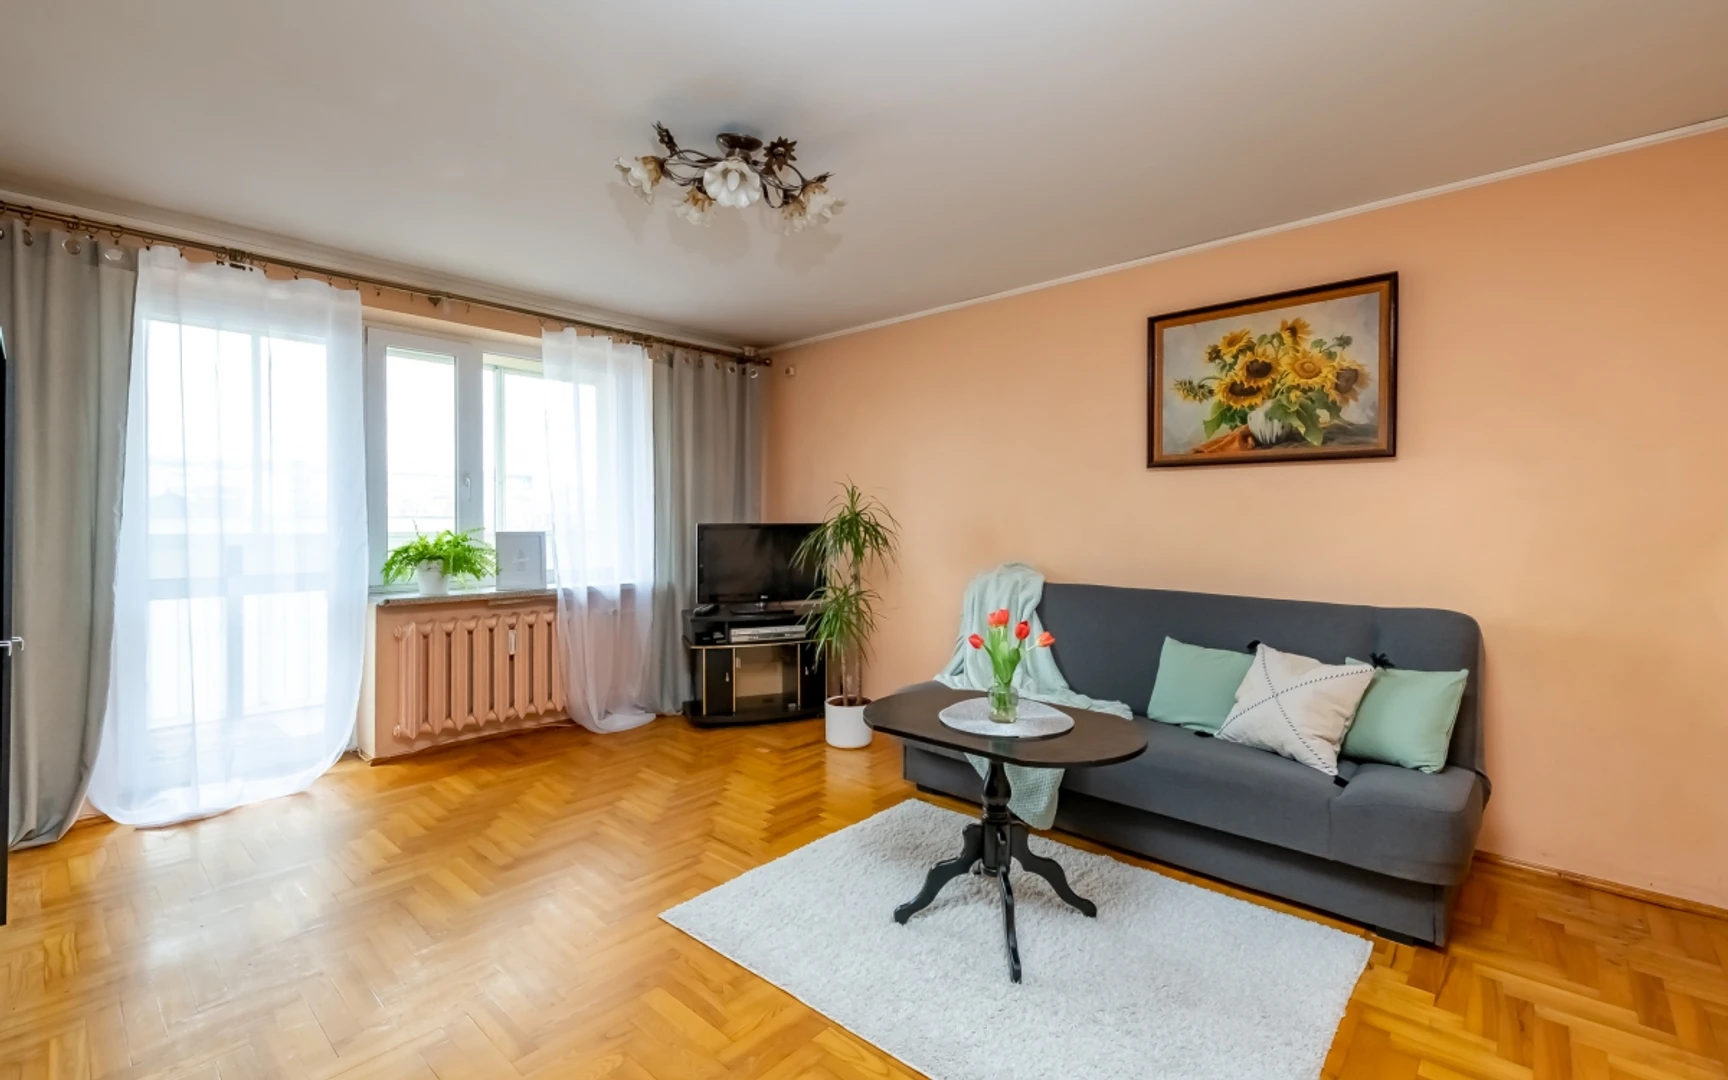 Alquiler de habitación en piso compartido en białystok